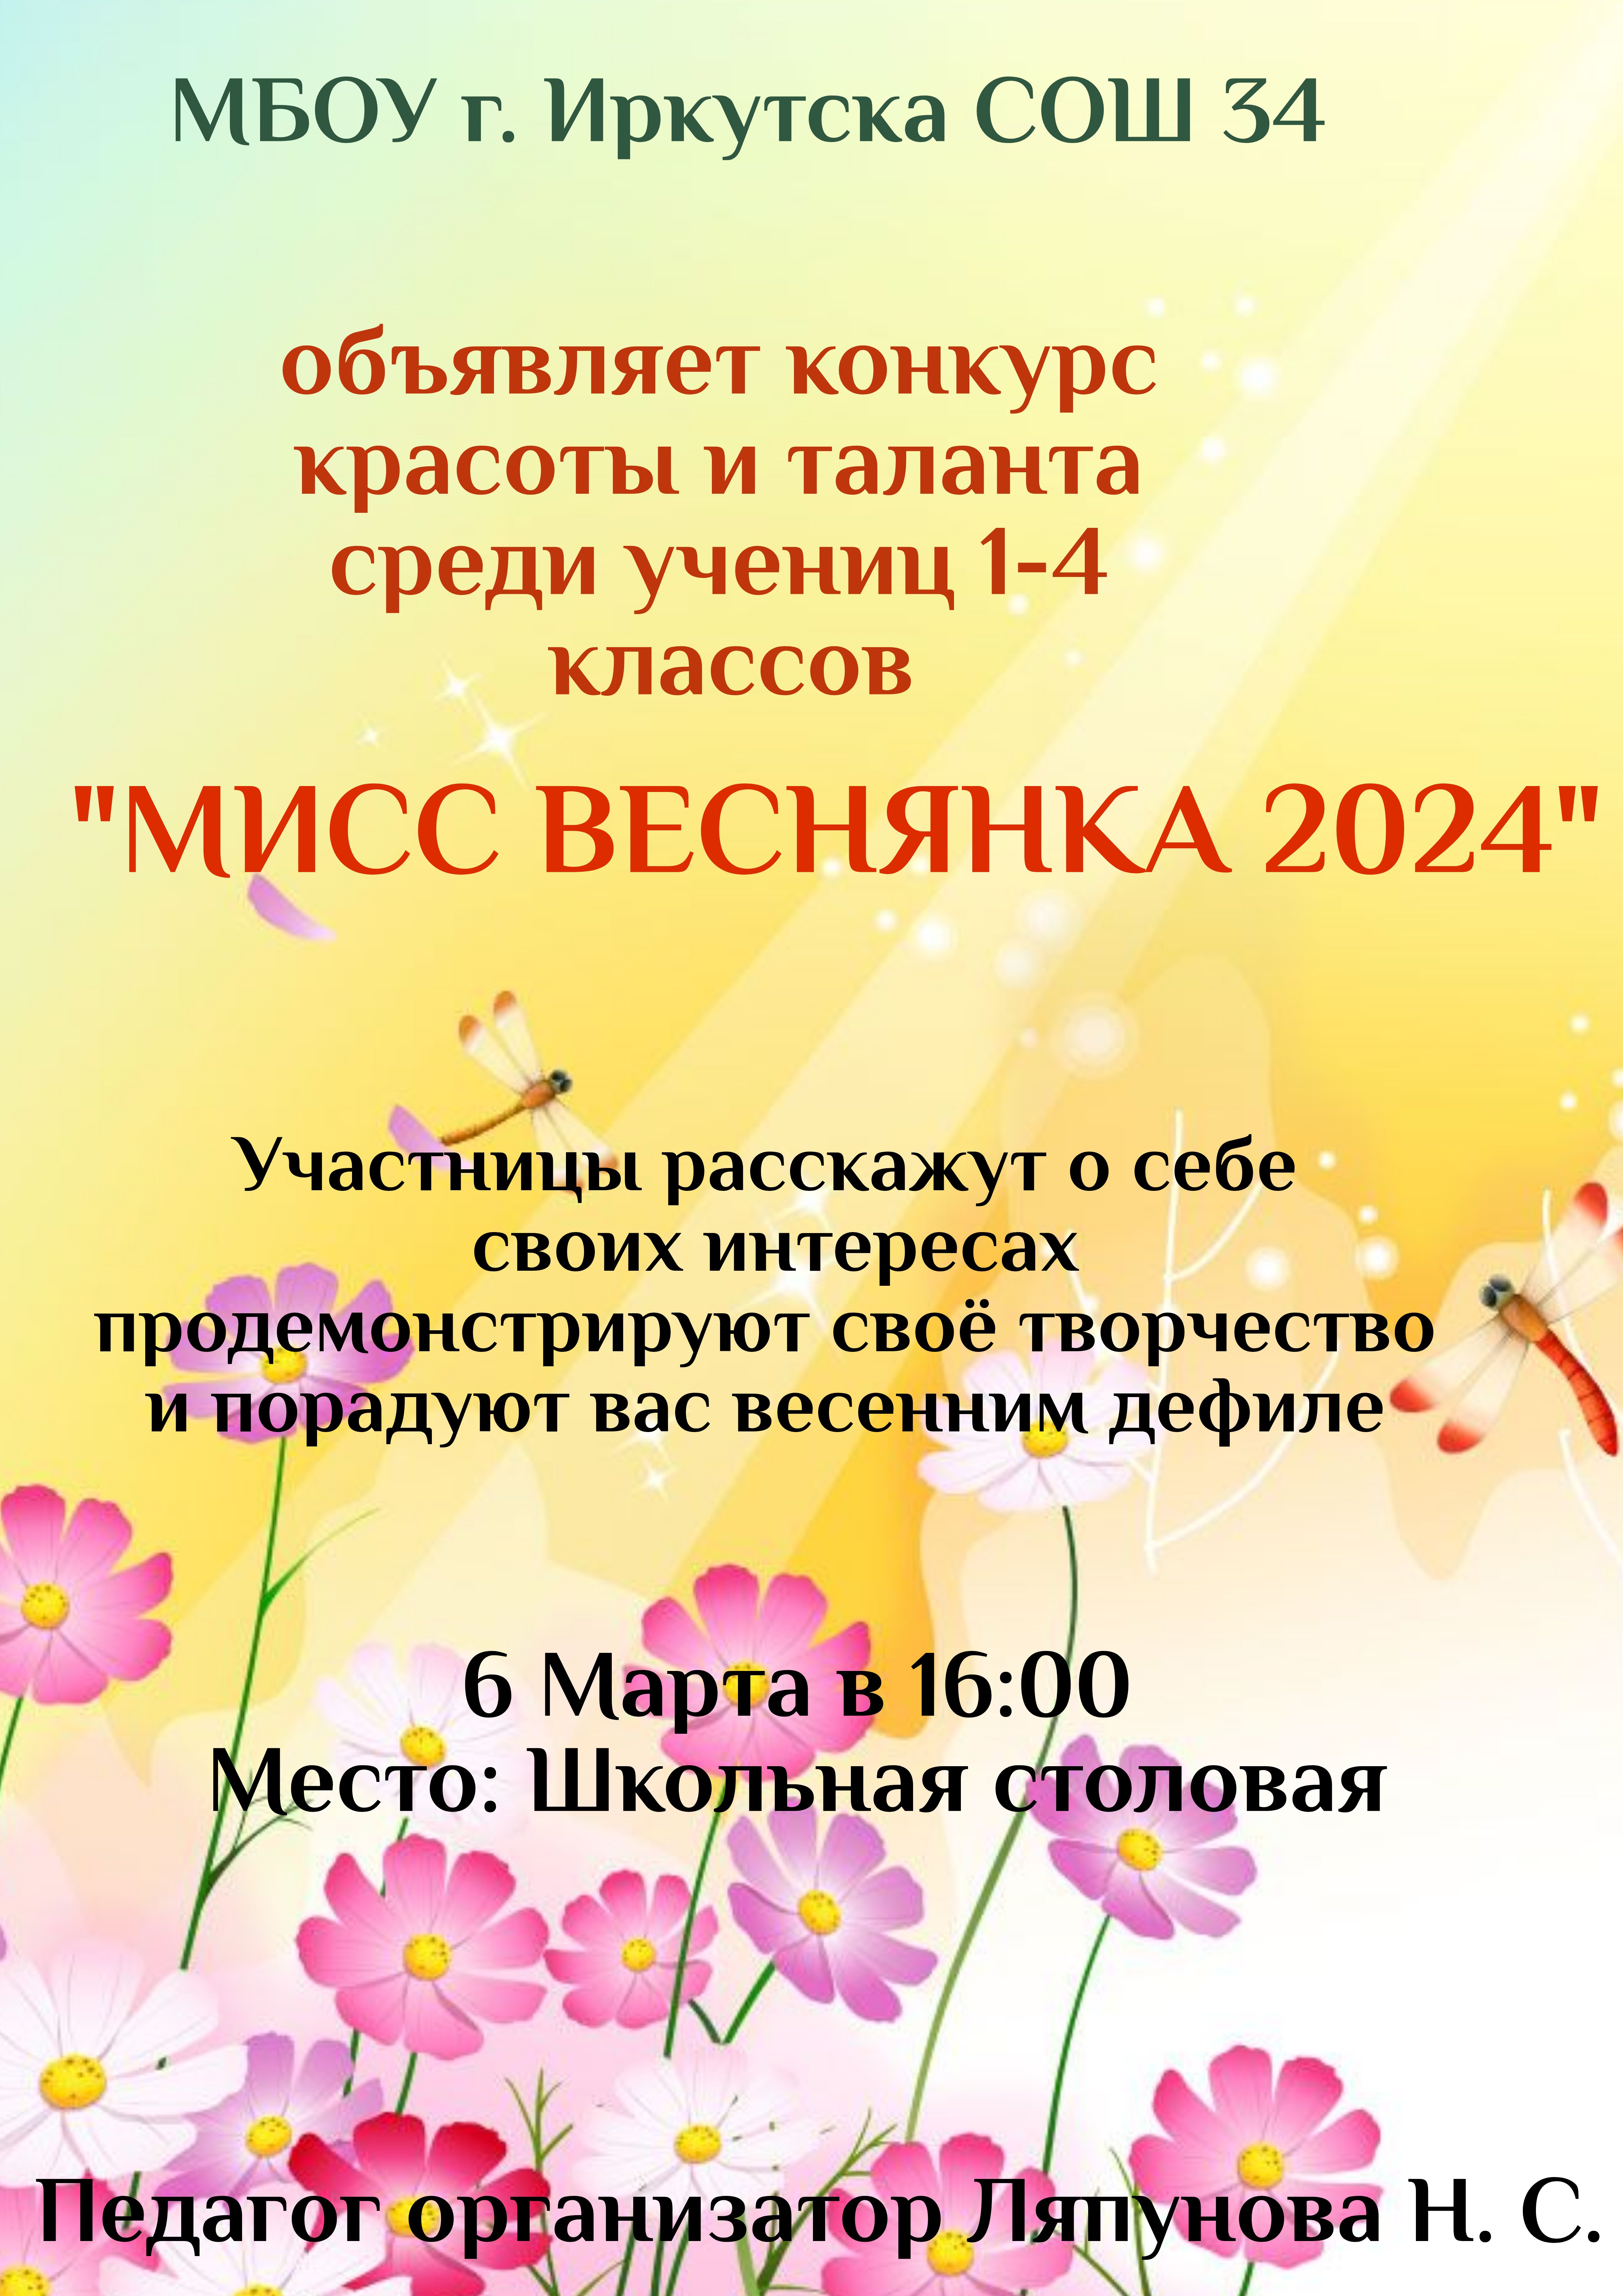 Мисс ВЕСНЯНКА 2024.